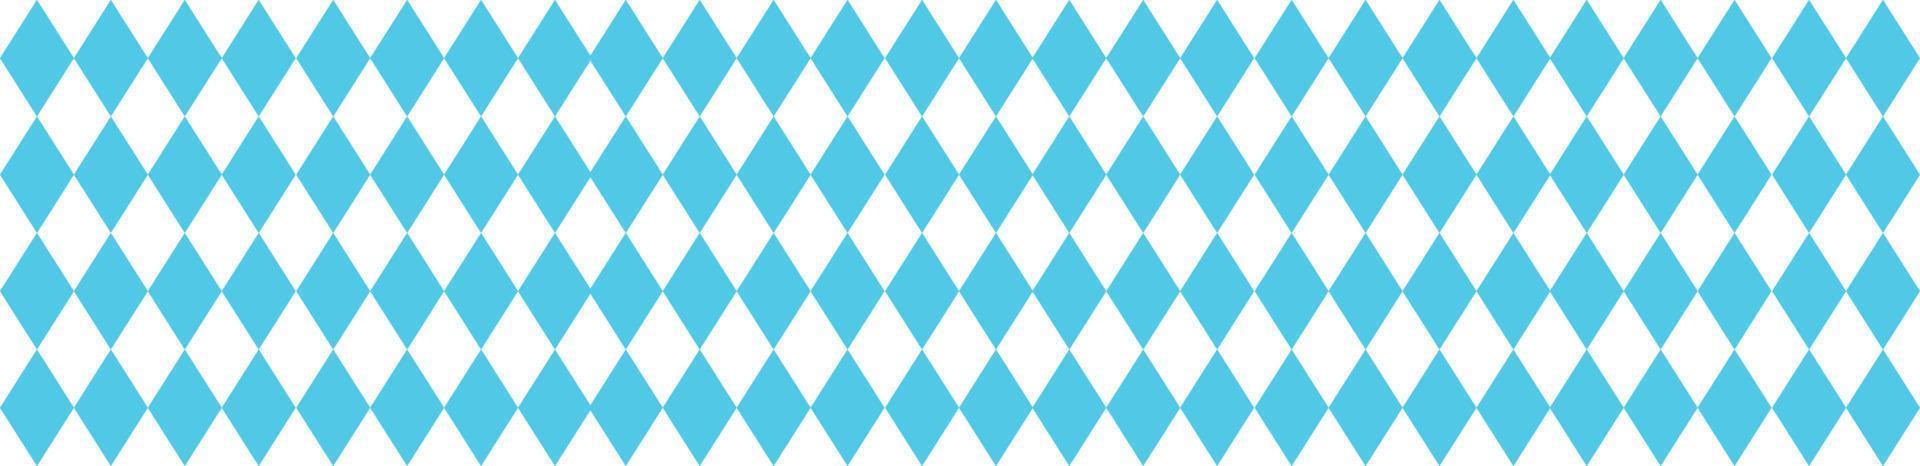 Beiers patroon voor oktoberfeest. Duitse blauw ruit textuur. vector illustratie